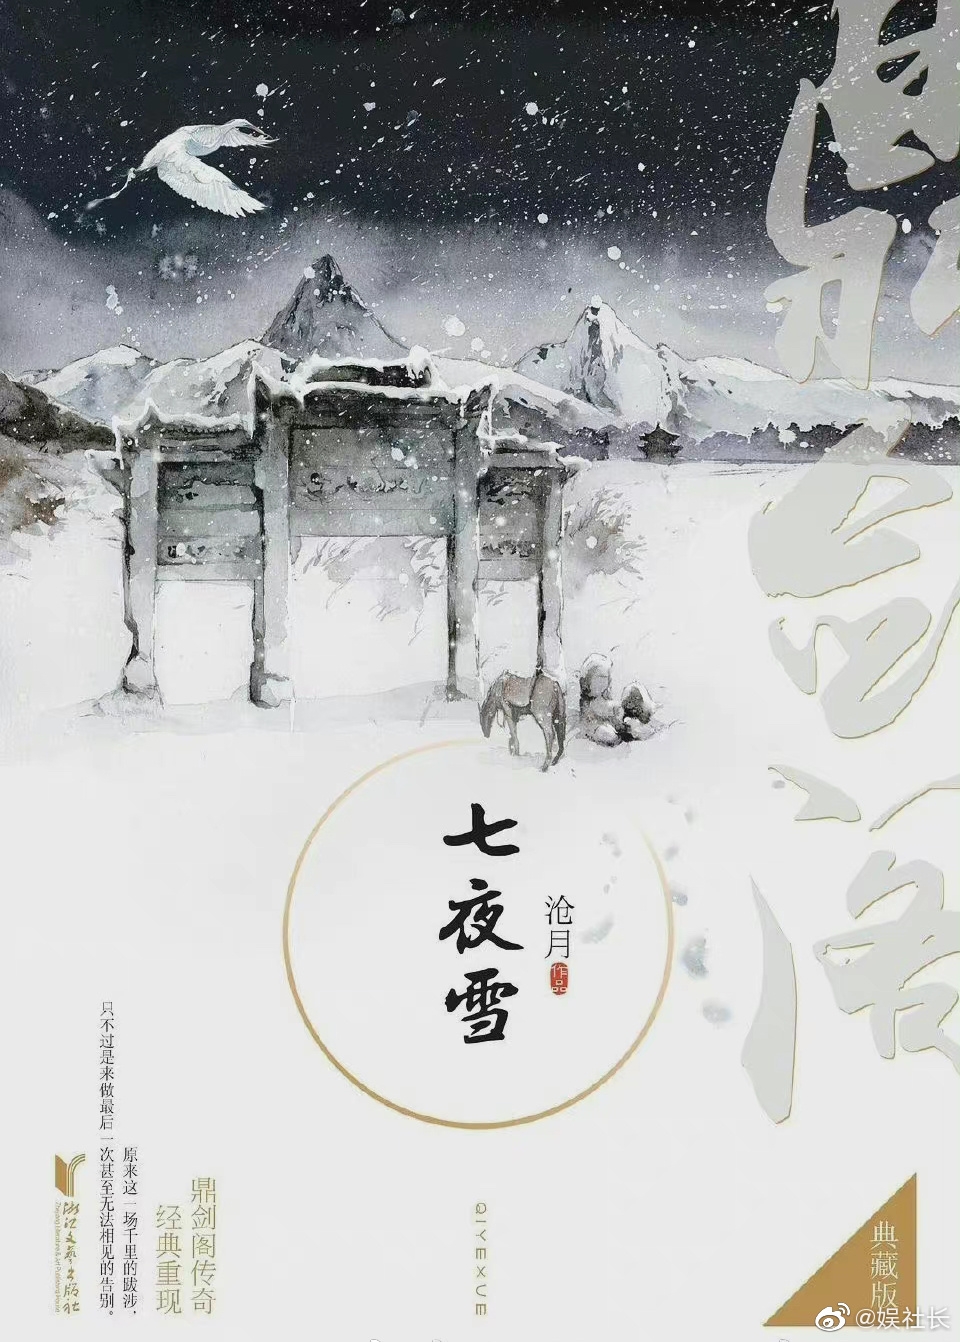 Vương Nhất Bác và Viên Băng Nghiên chuẩn bị thành đôi trong dự án phim mới 'Thất Dạ Tuyết'